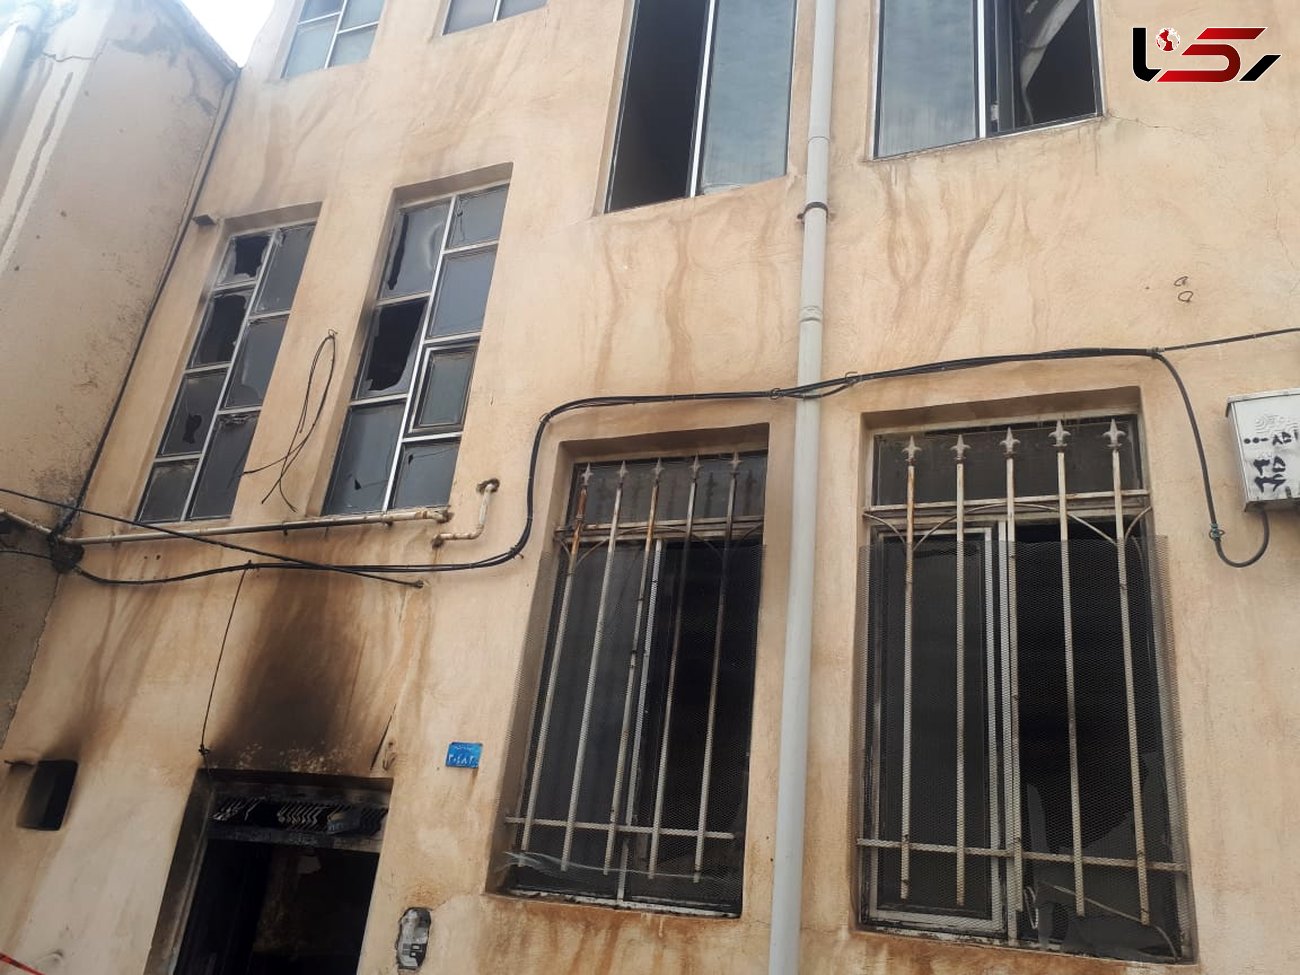 آتش سوزی منزل مسکونی در خیابان مدرس کرمانشاه/ سه نفر مصدوم و یک نفر نجات یافت + عکس